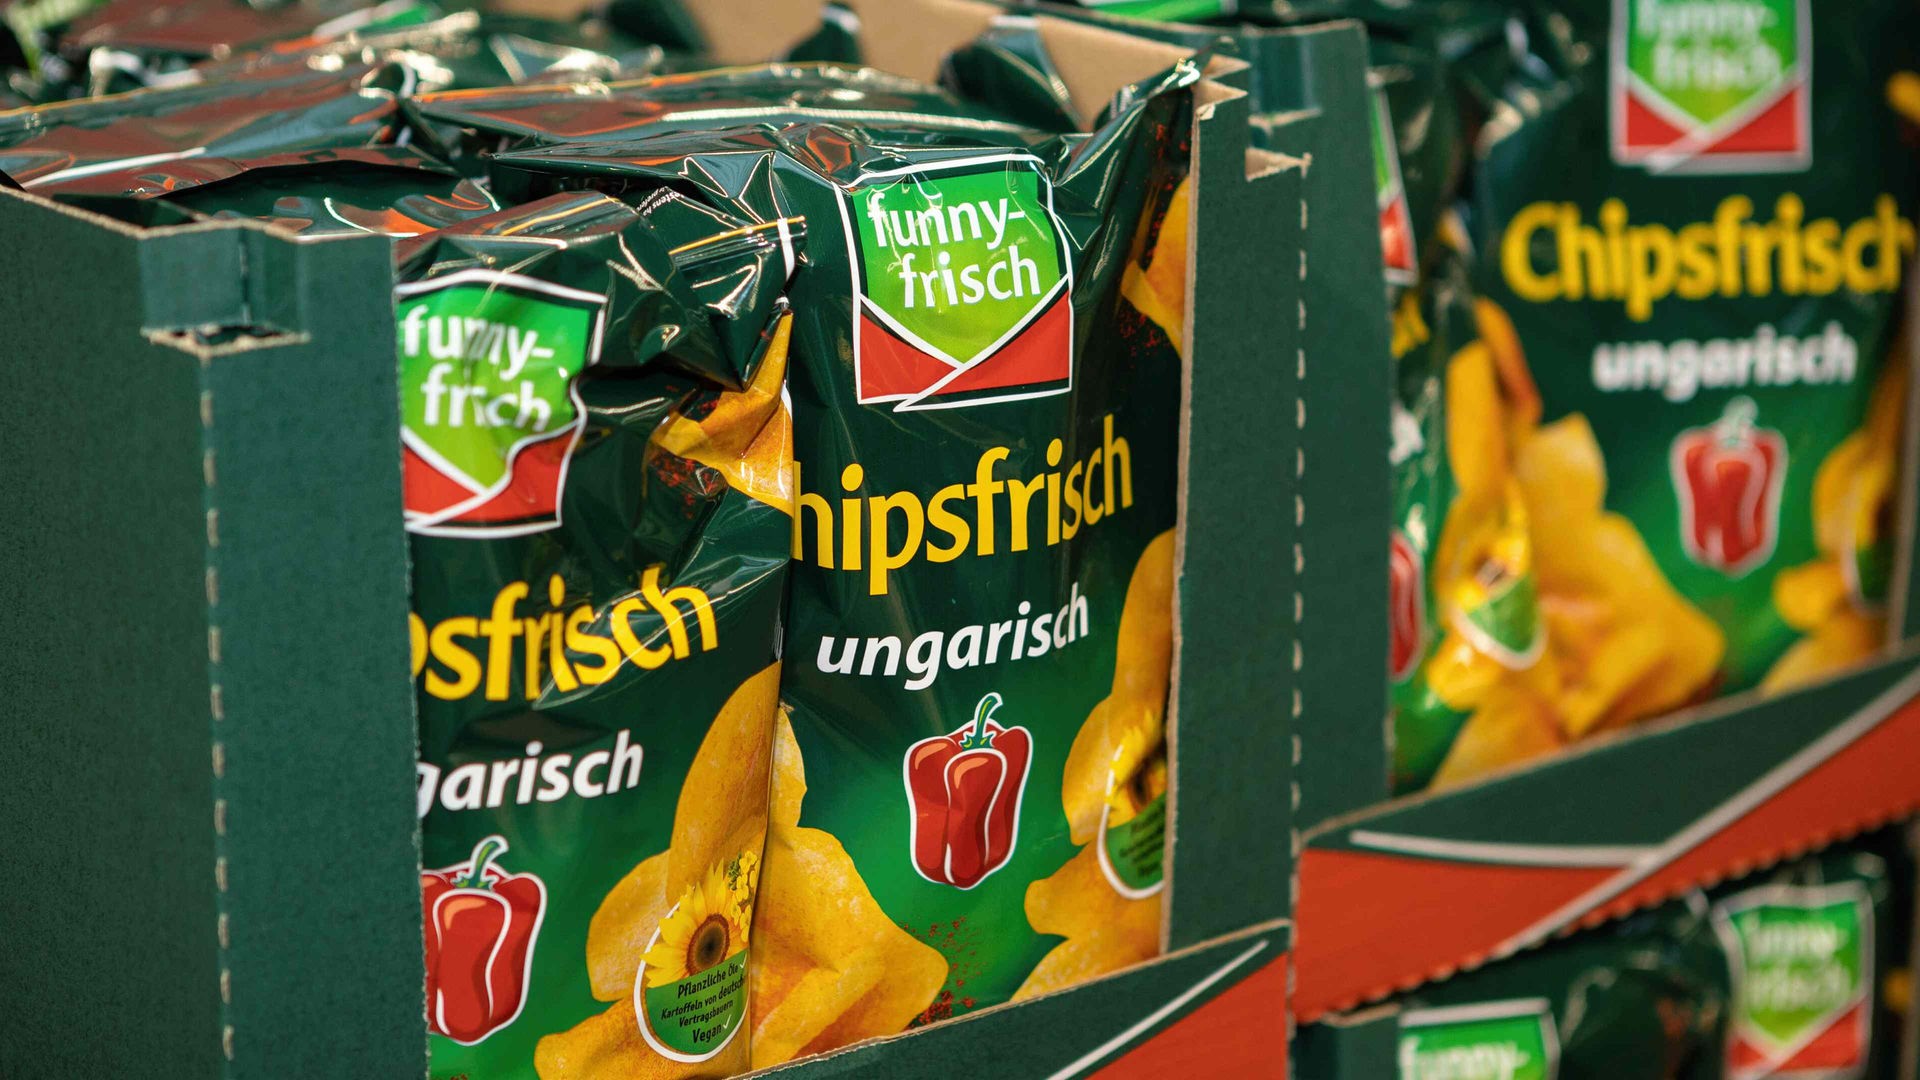 Chips-Rückruf bei Funny-Frisch - Verbraucher in NRW betroffen - Nachrichten  - WDR